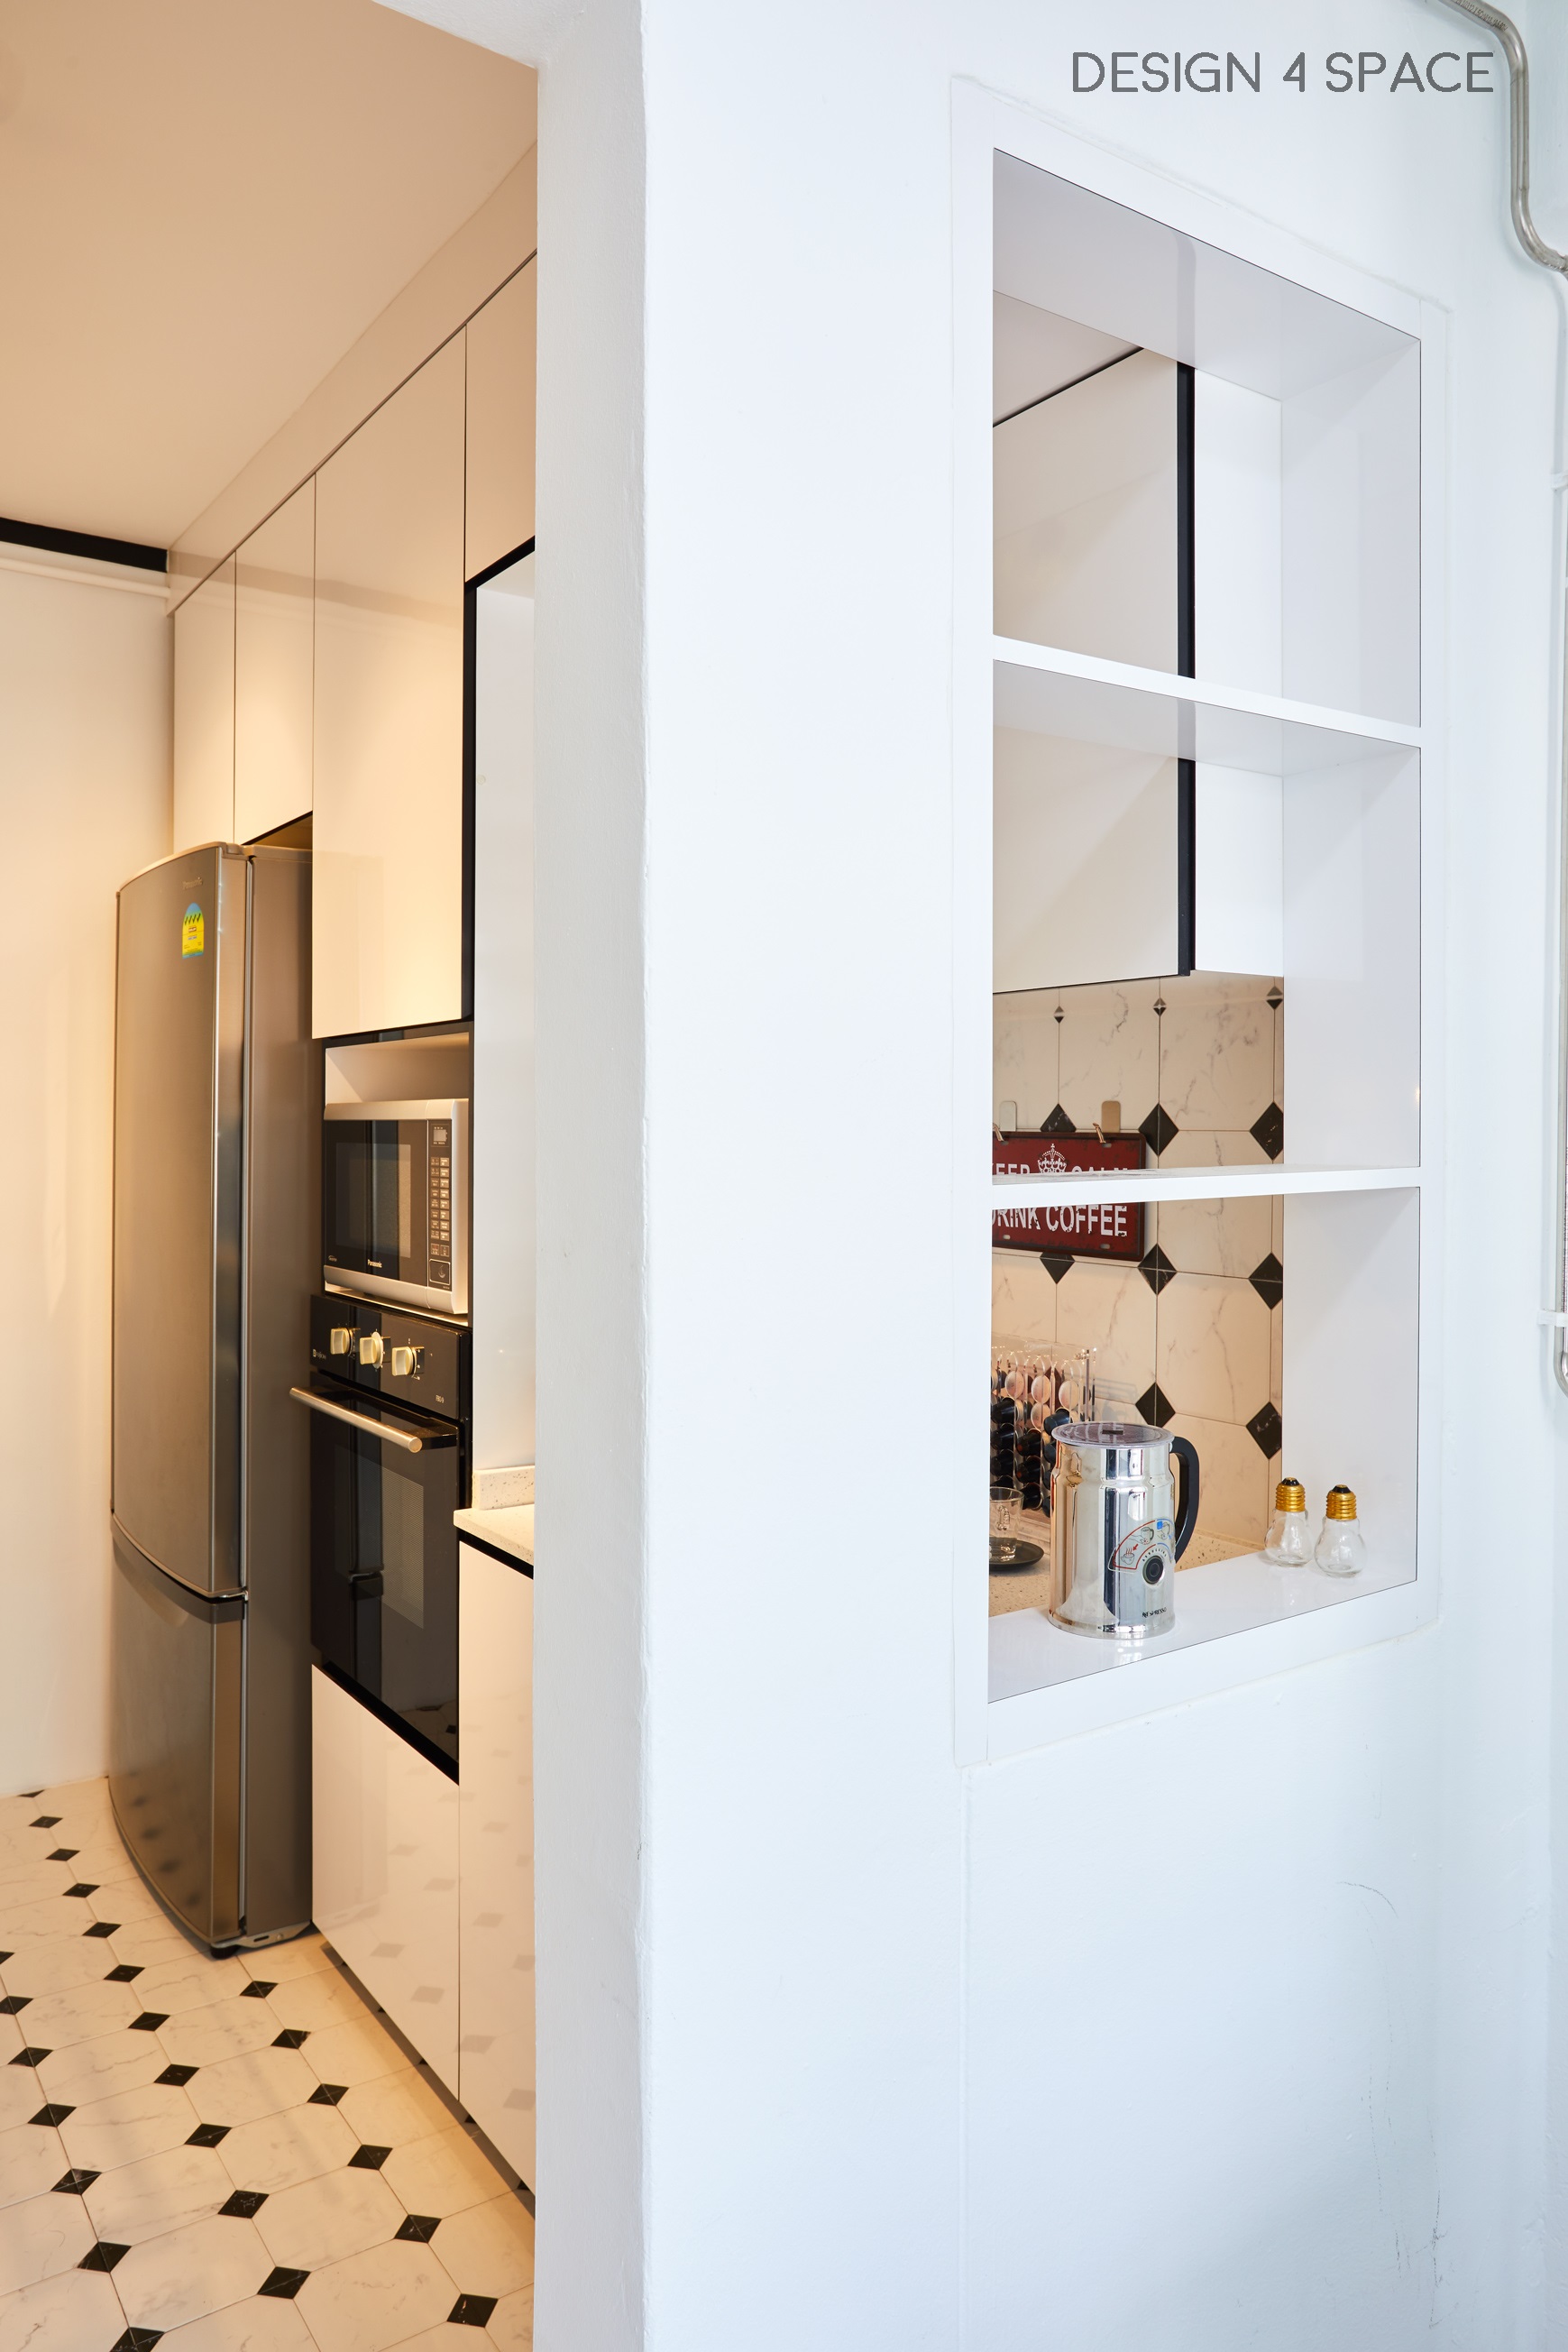 Industrial, Modern, Retro Design - Kitchen - HDB 4 Room - Design by Design 4 Space Pte Ltd